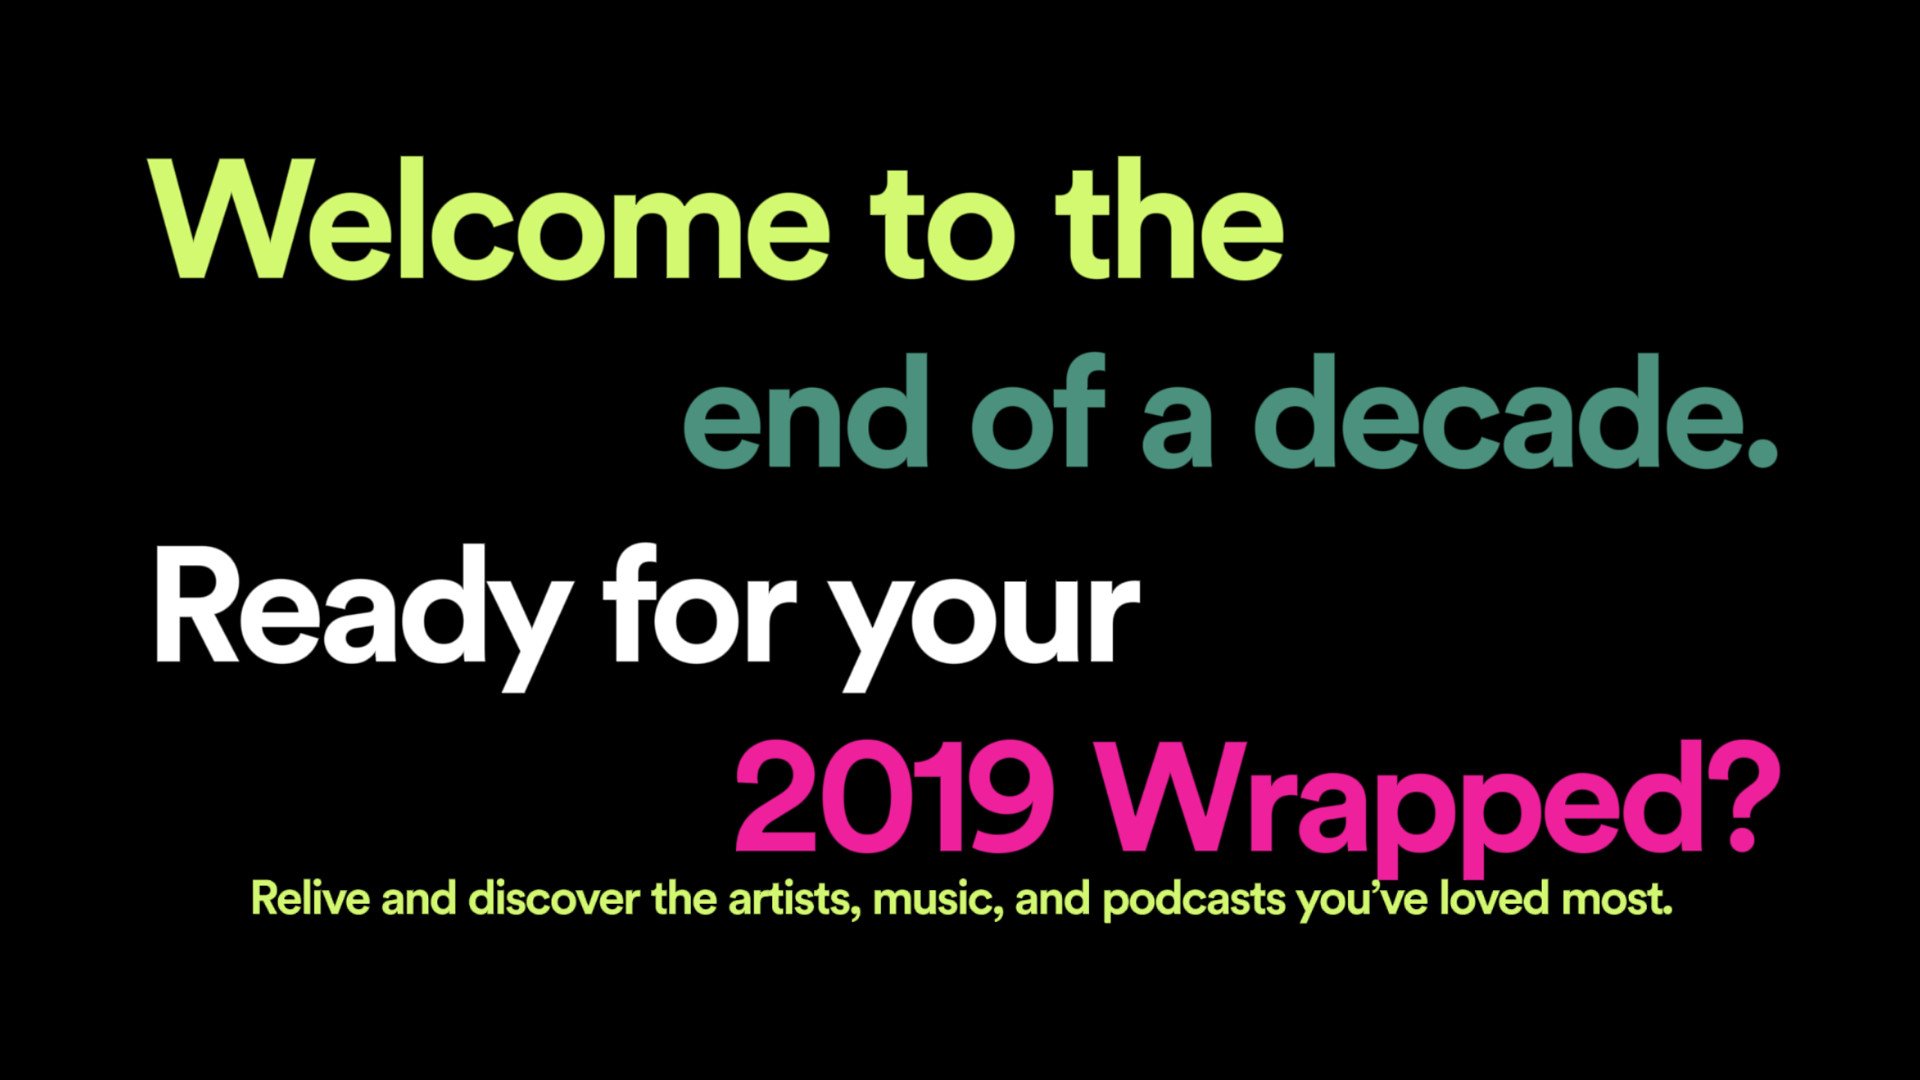 spotify-wrapped-2019.jpg